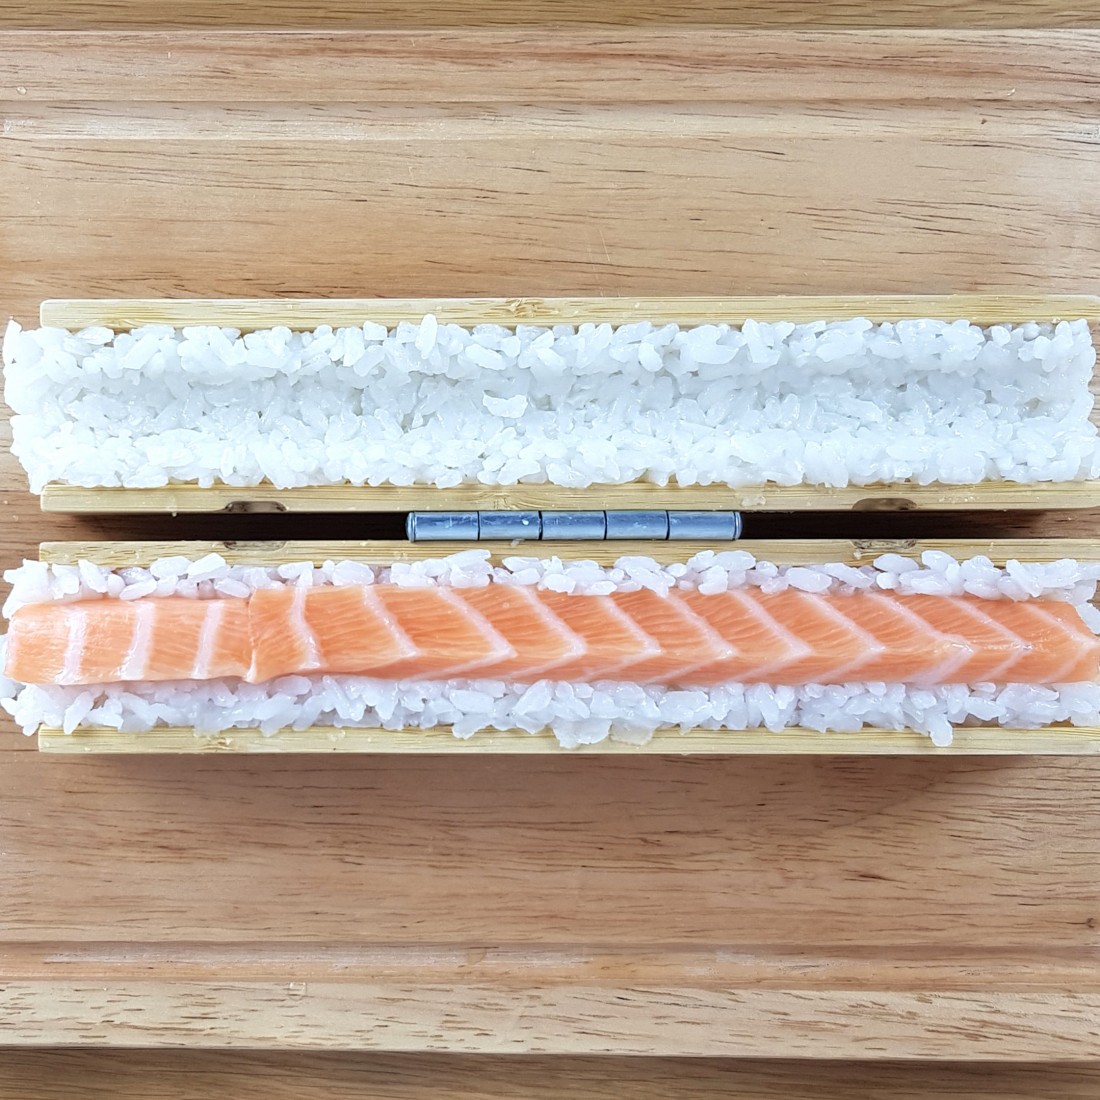 copy of Appareil à sushi maki facile